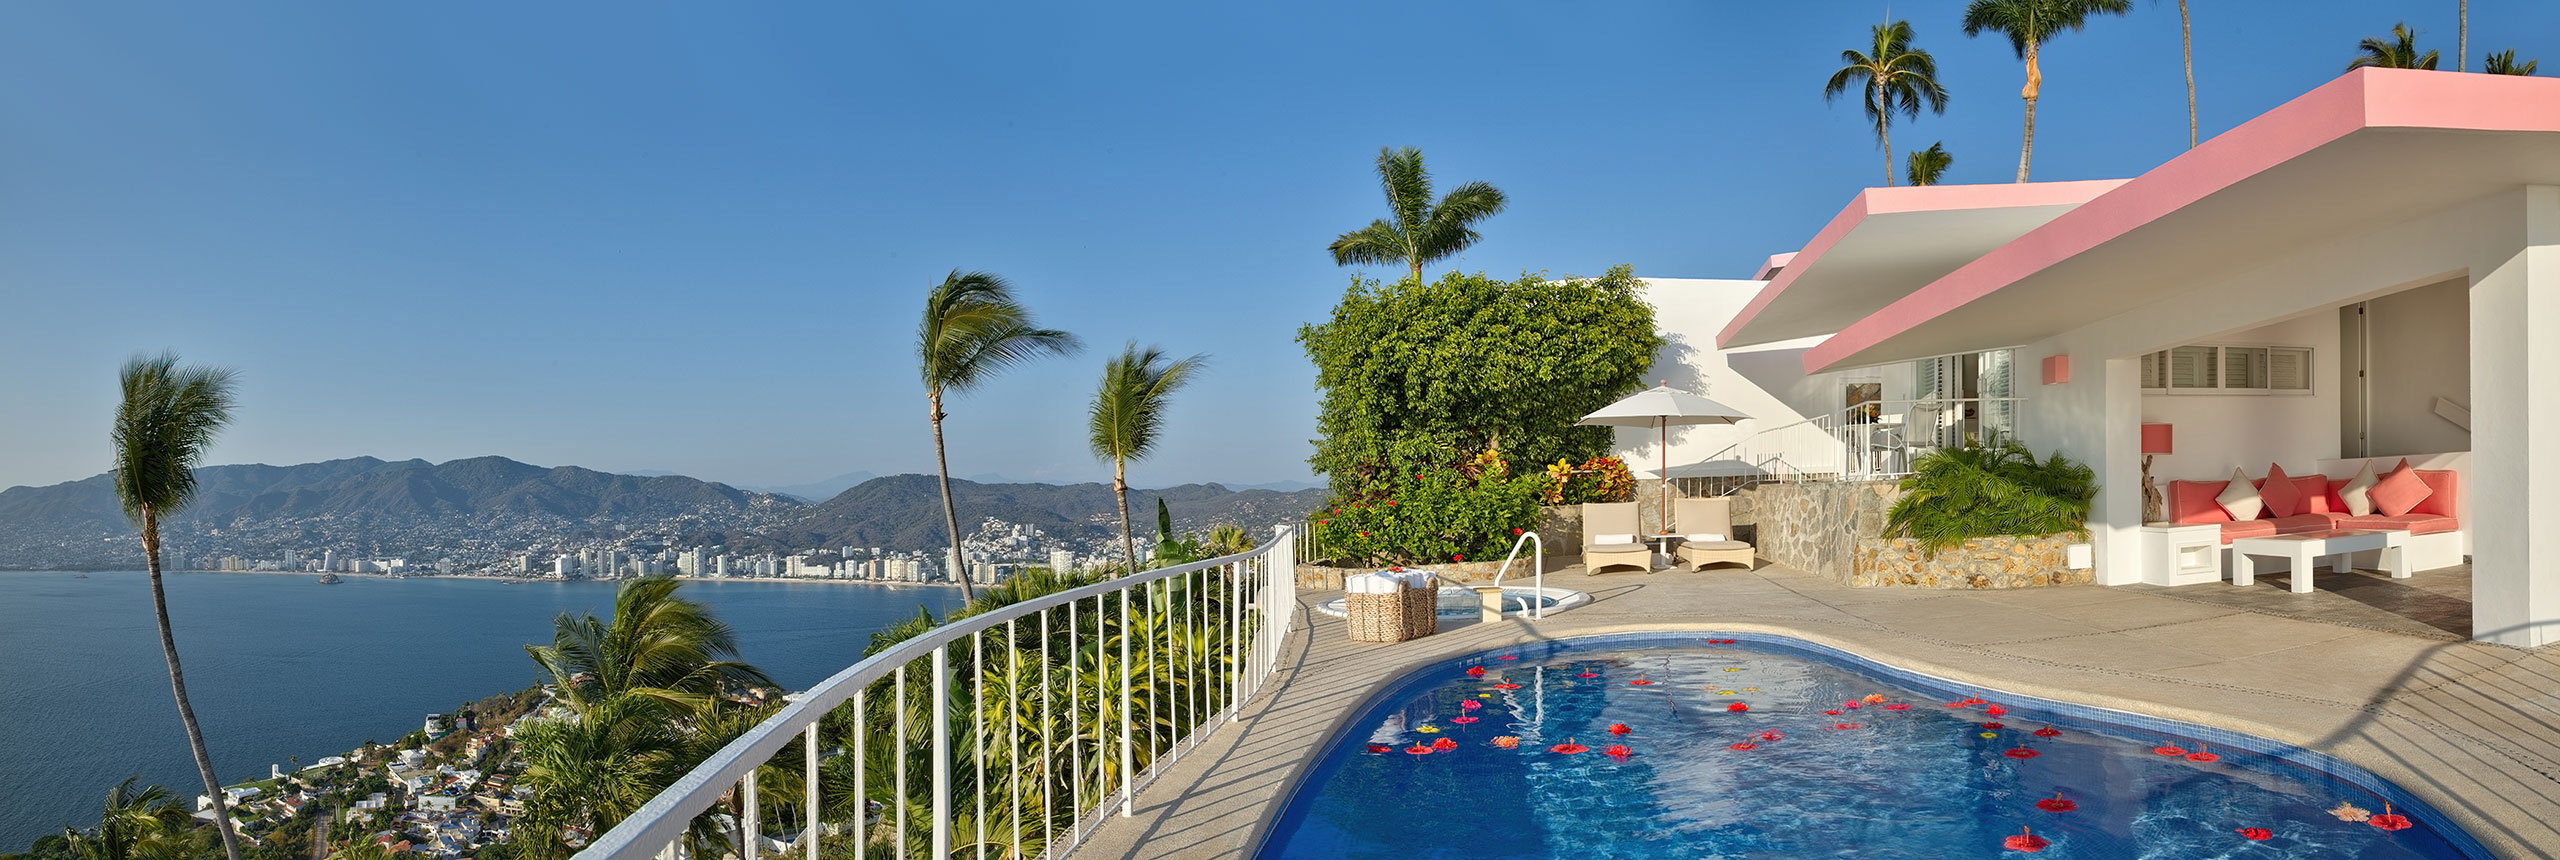 Hotel Las Brisas Acapulco Master Suite with Jacuzzi panoramica